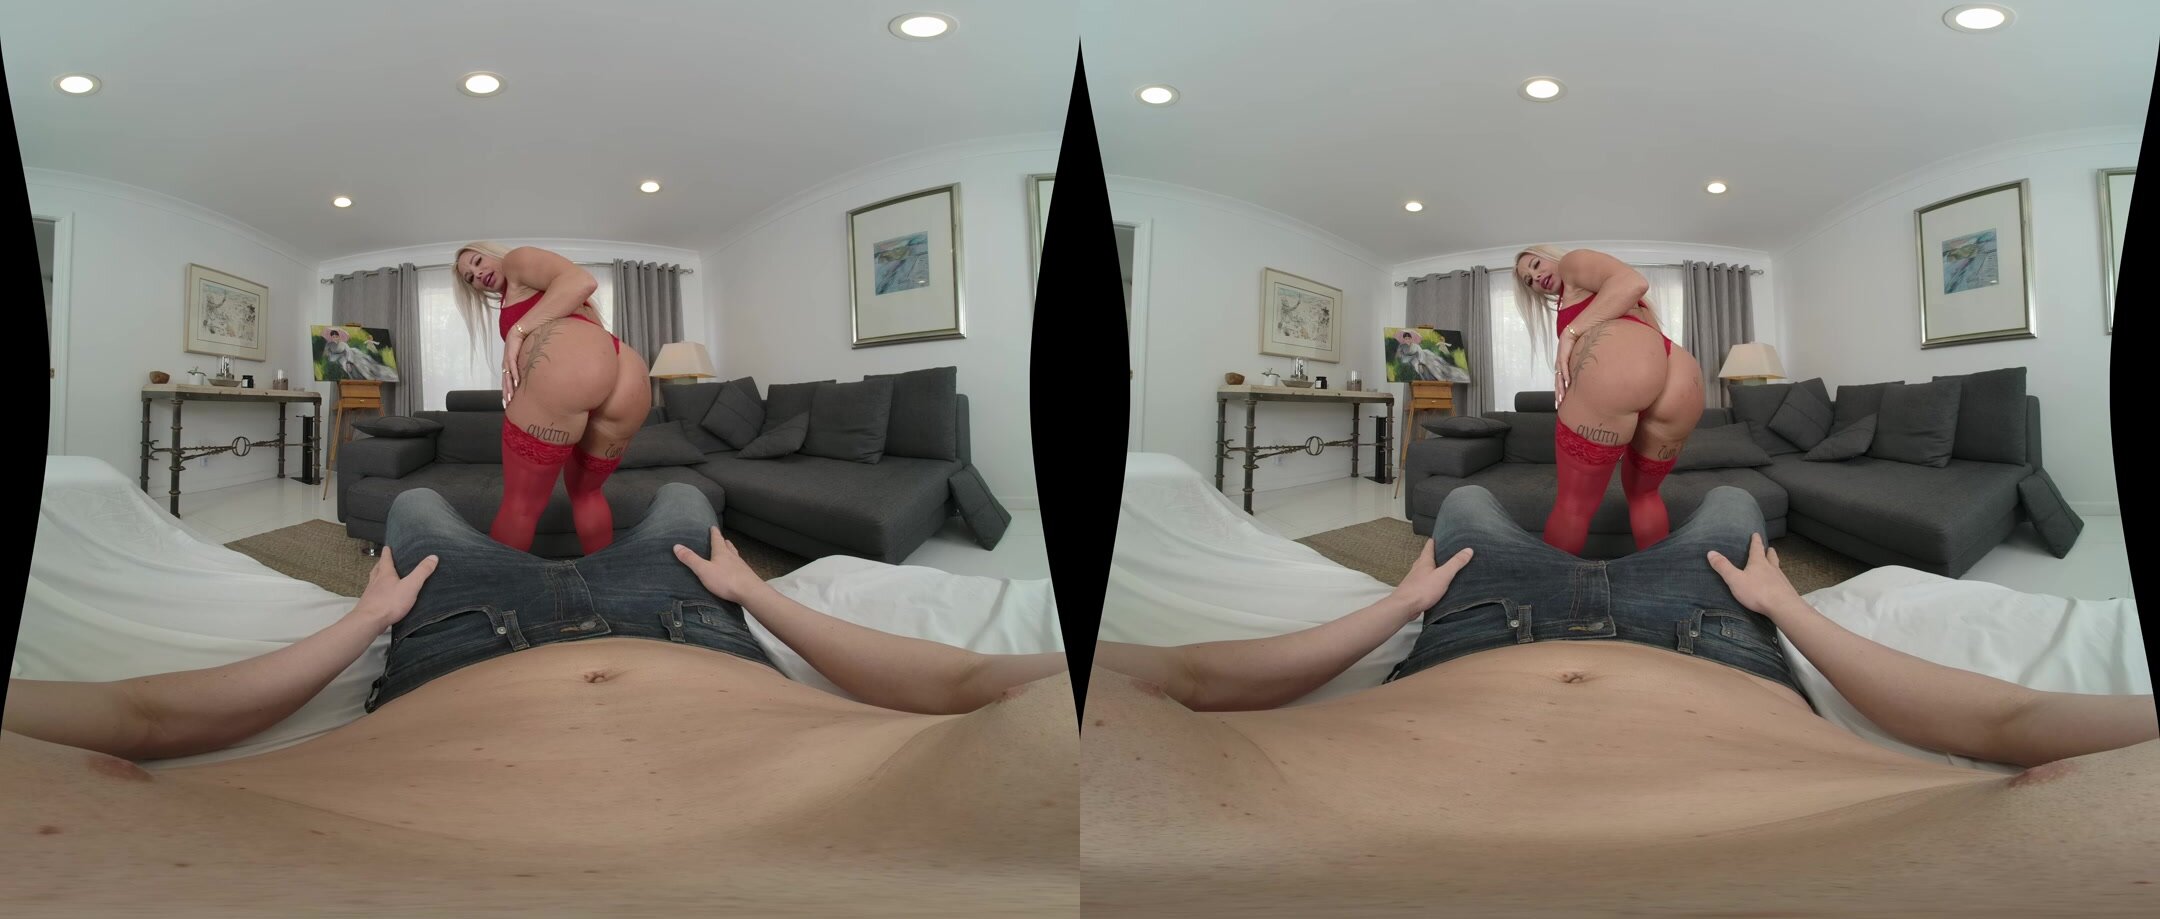 Robbin Banx - Stockings In VR